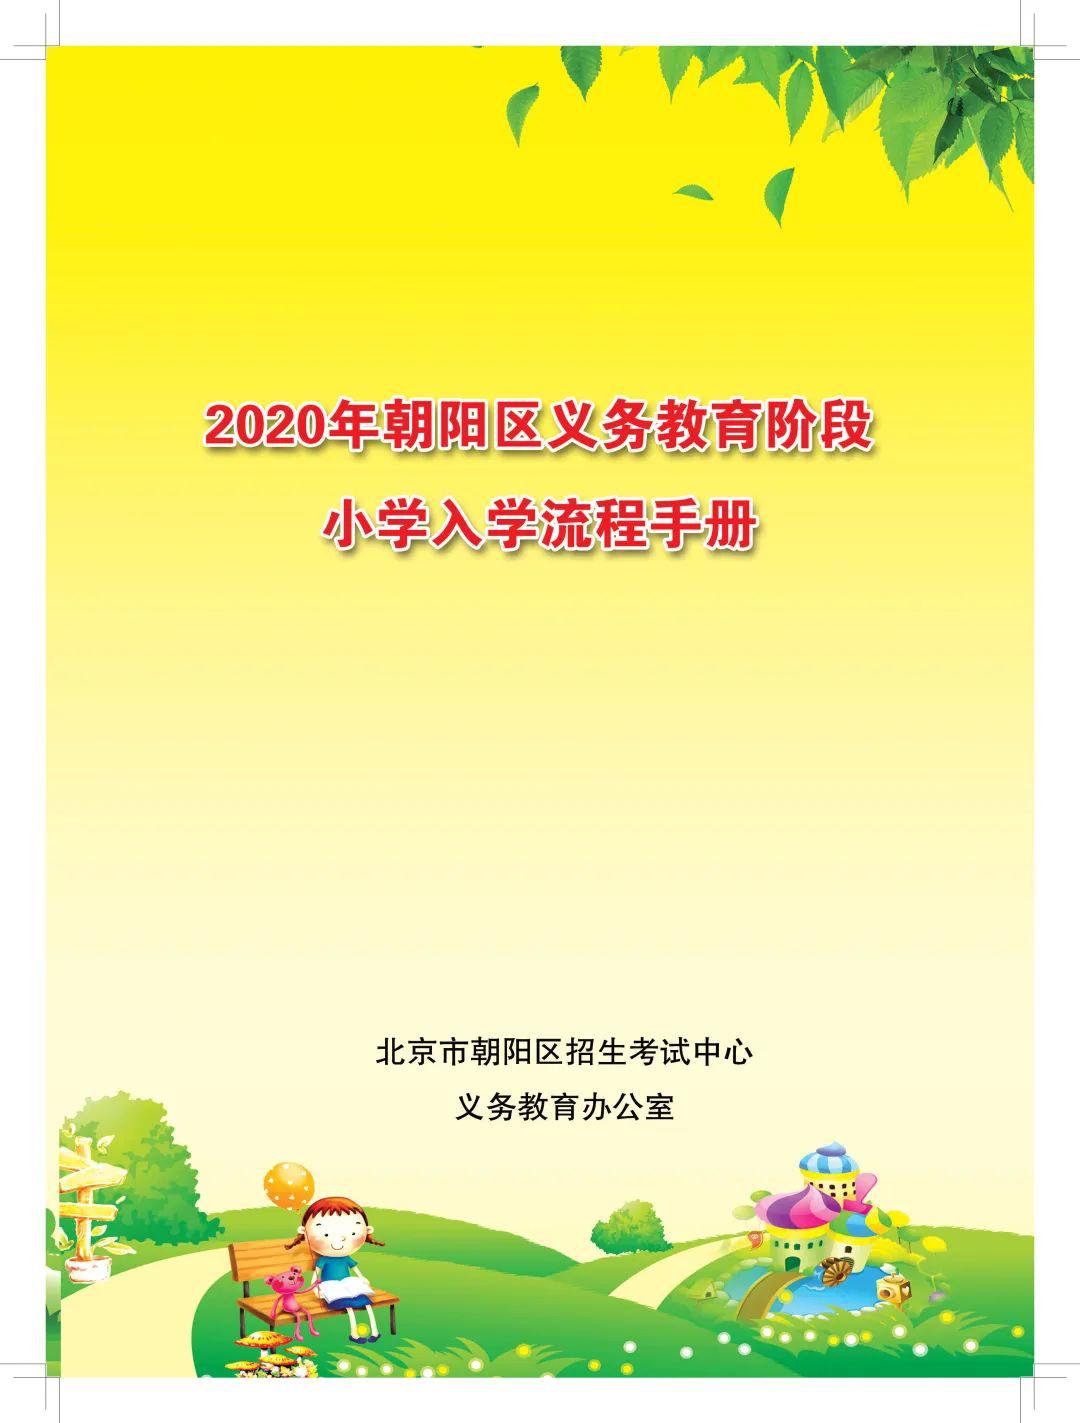 【通知】朝阳区2020年义务教育阶段小学入学流程手册发布!需满足这些!